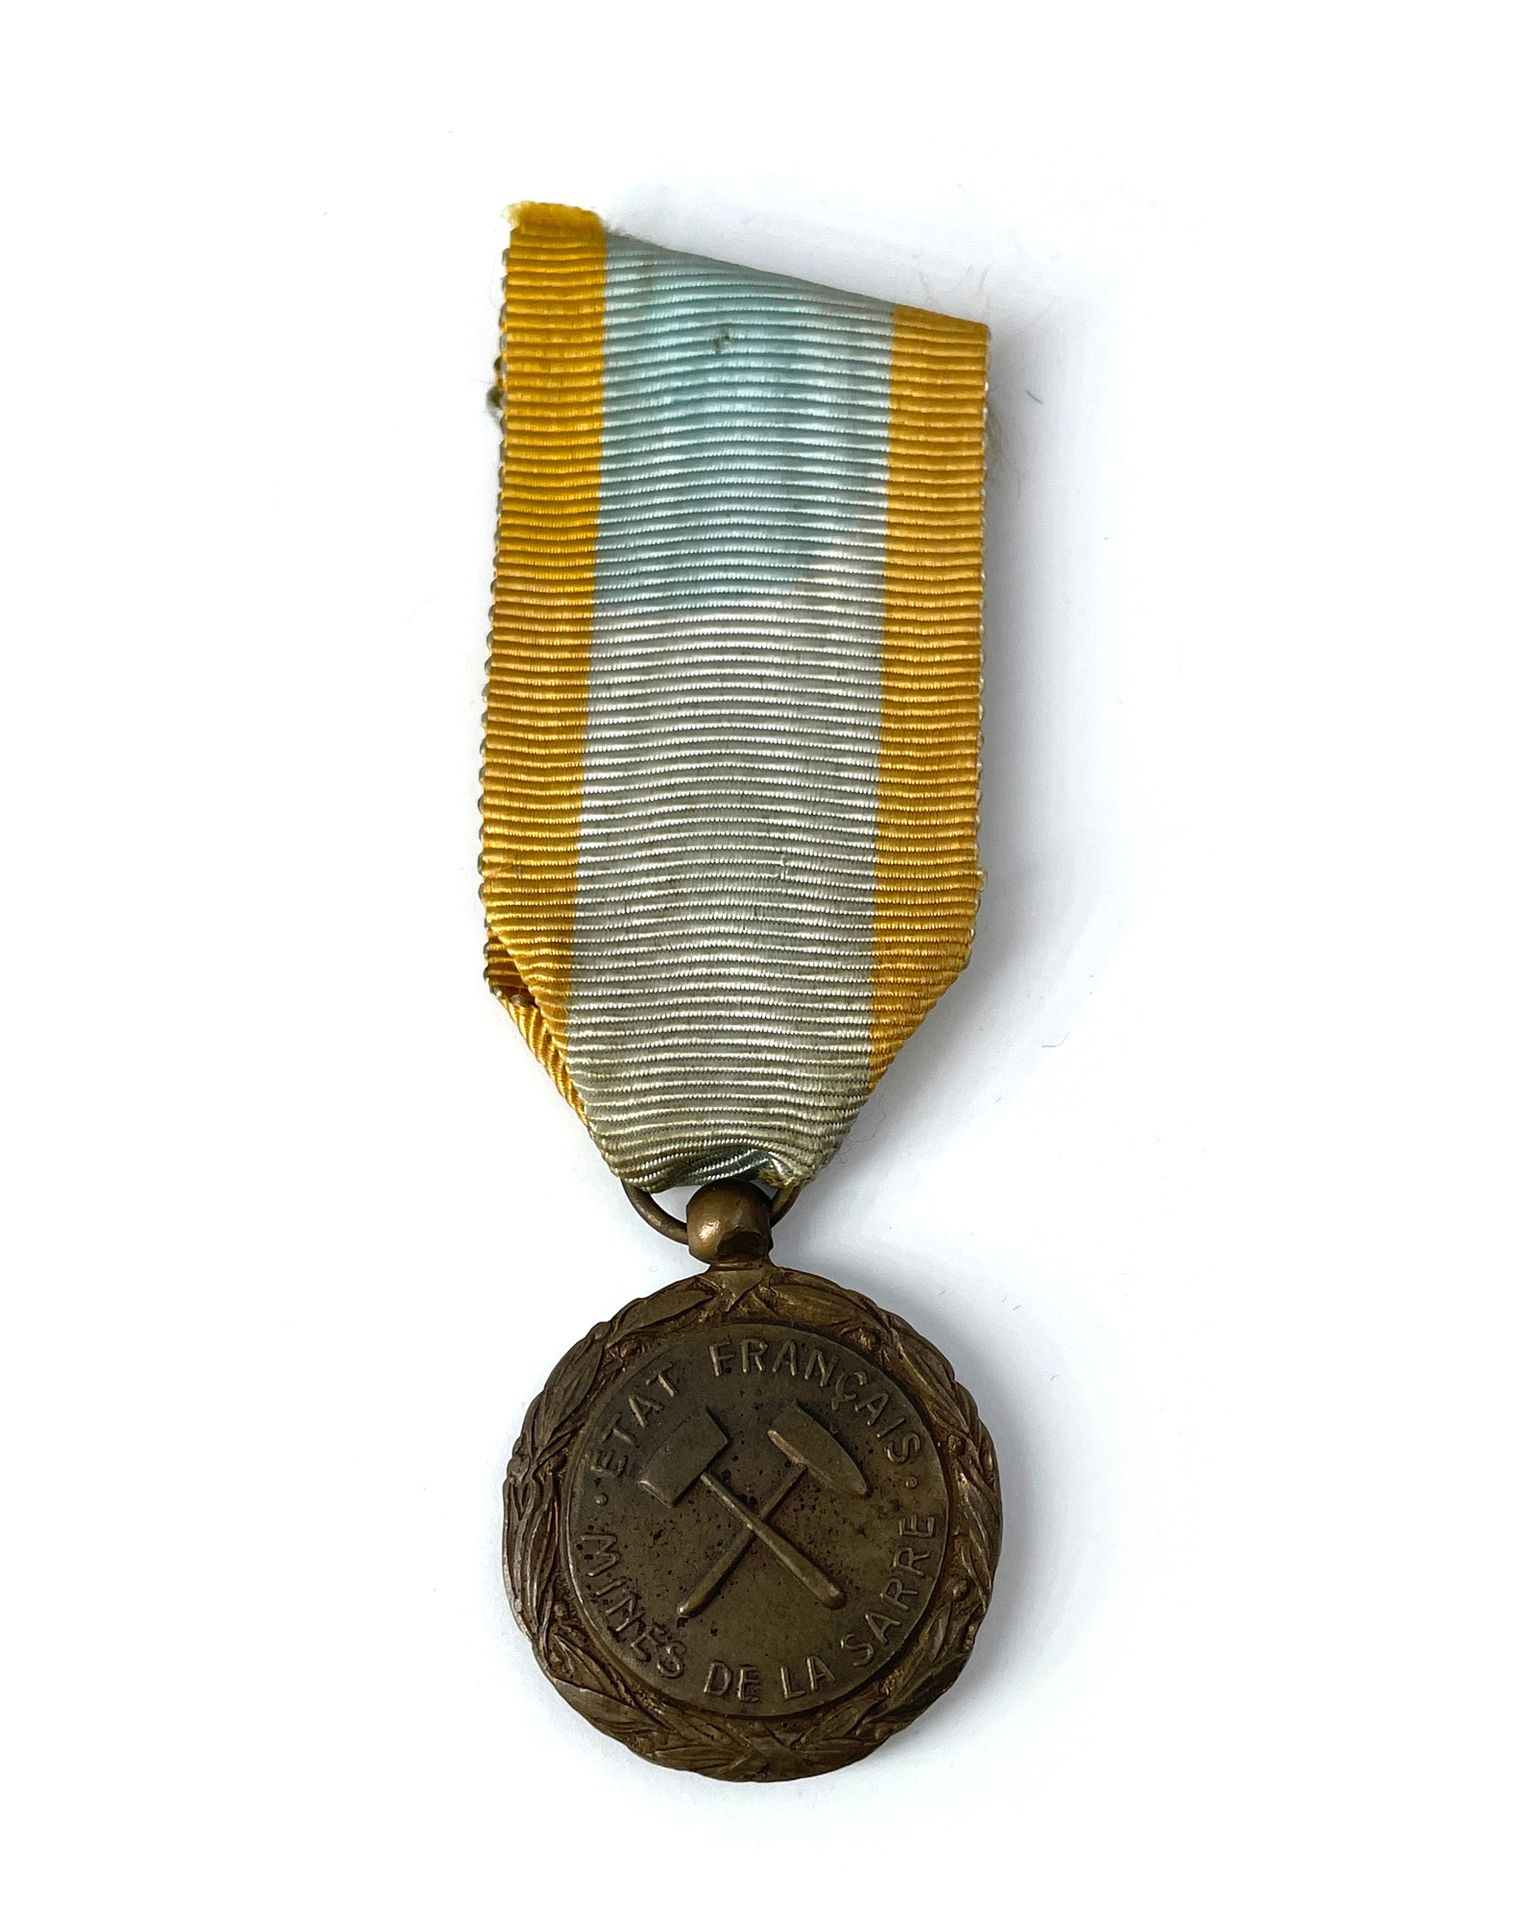 Null FRANKREICH Bergbau-Medaille des Saarlandes.
Aus Bronze. Band.
30 mm.